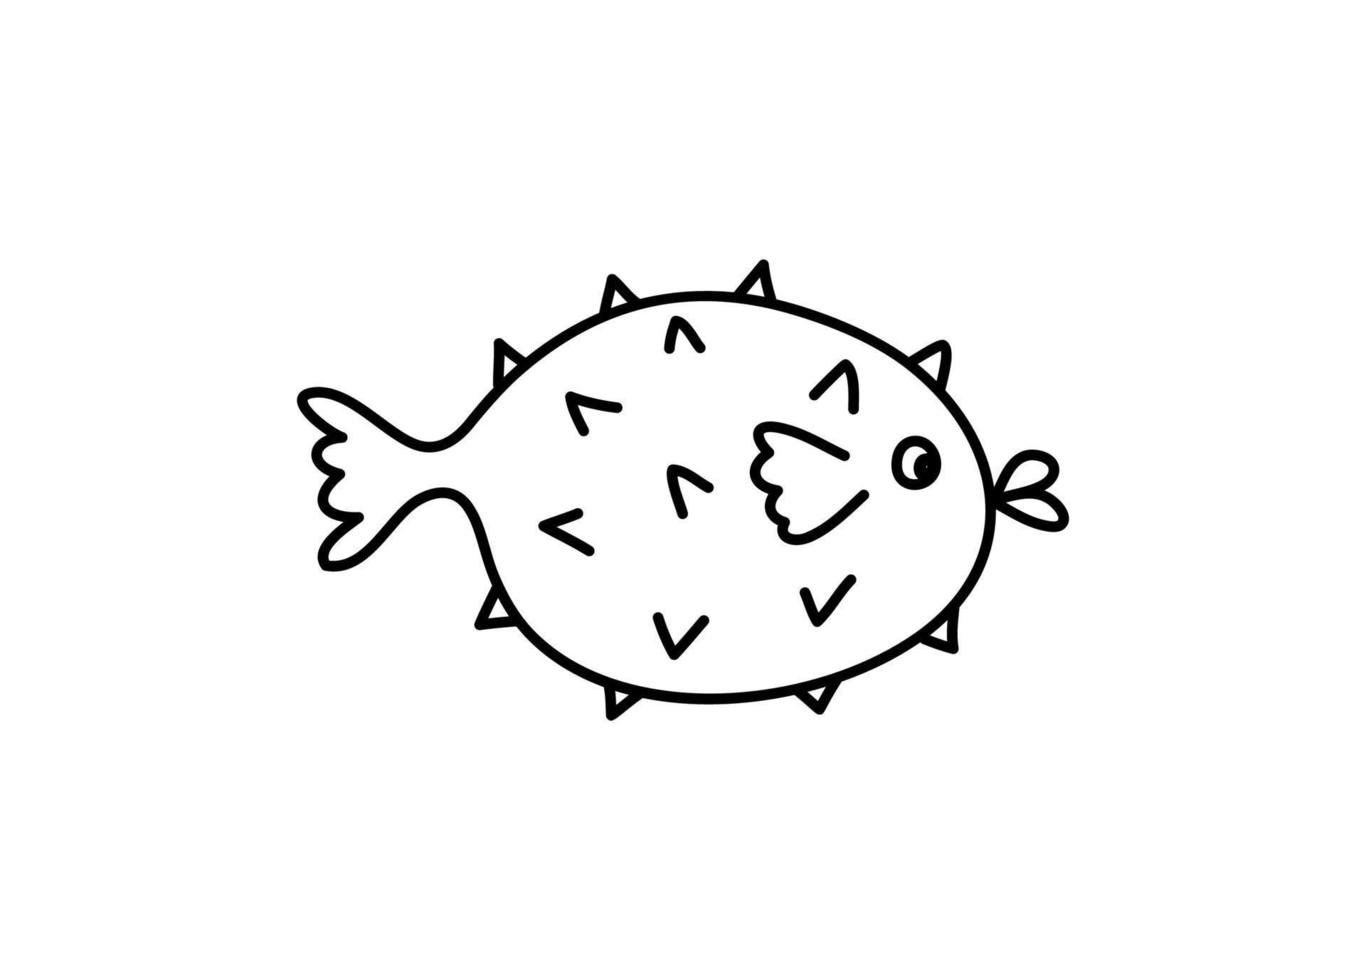 vetor desenhado à mão doodle peixe ouriço em estilo escandinavo monoline. imagem para etiqueta, ícone da web, decoração de cartão postal. alegre infantil, tema marinho fofo